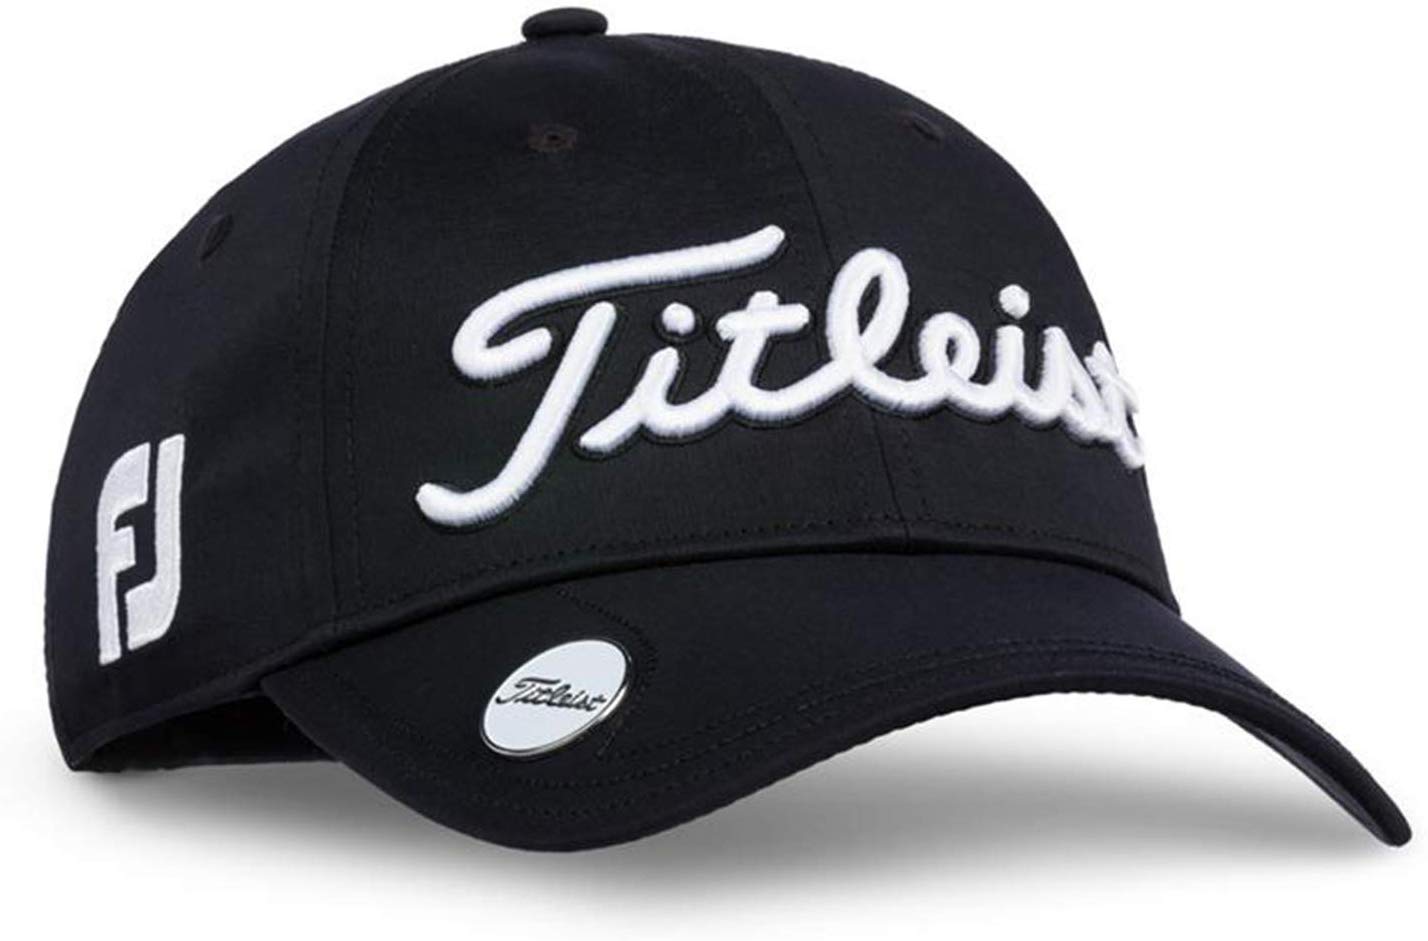 Titleist Womens Golf Hats, Caps & Visors